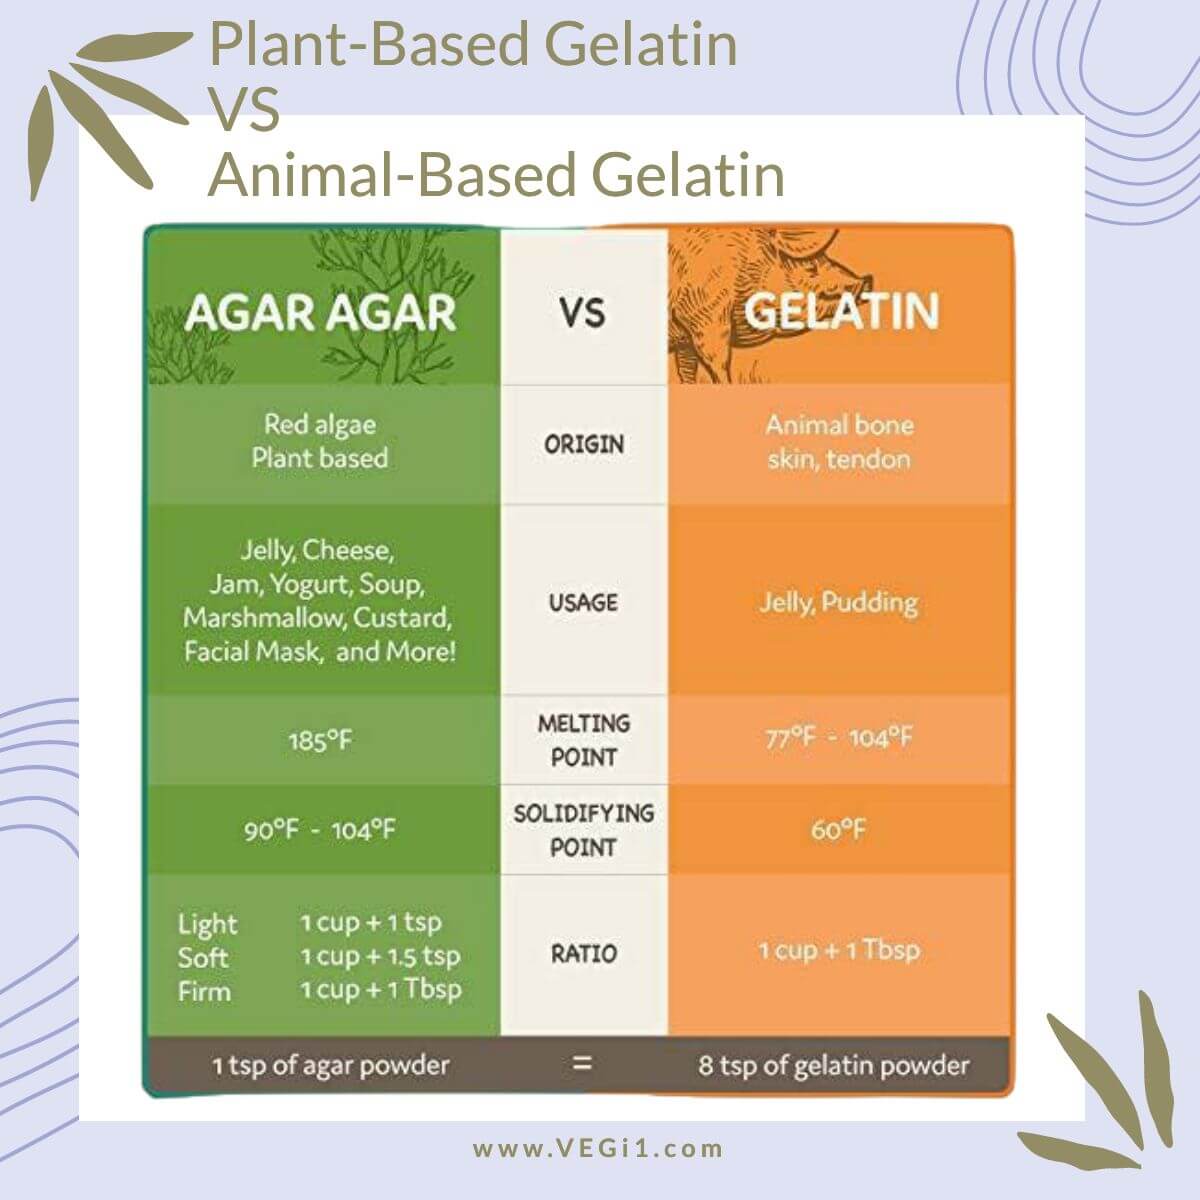 Comparison of Plant-based gelatin and Animal-based gelatin